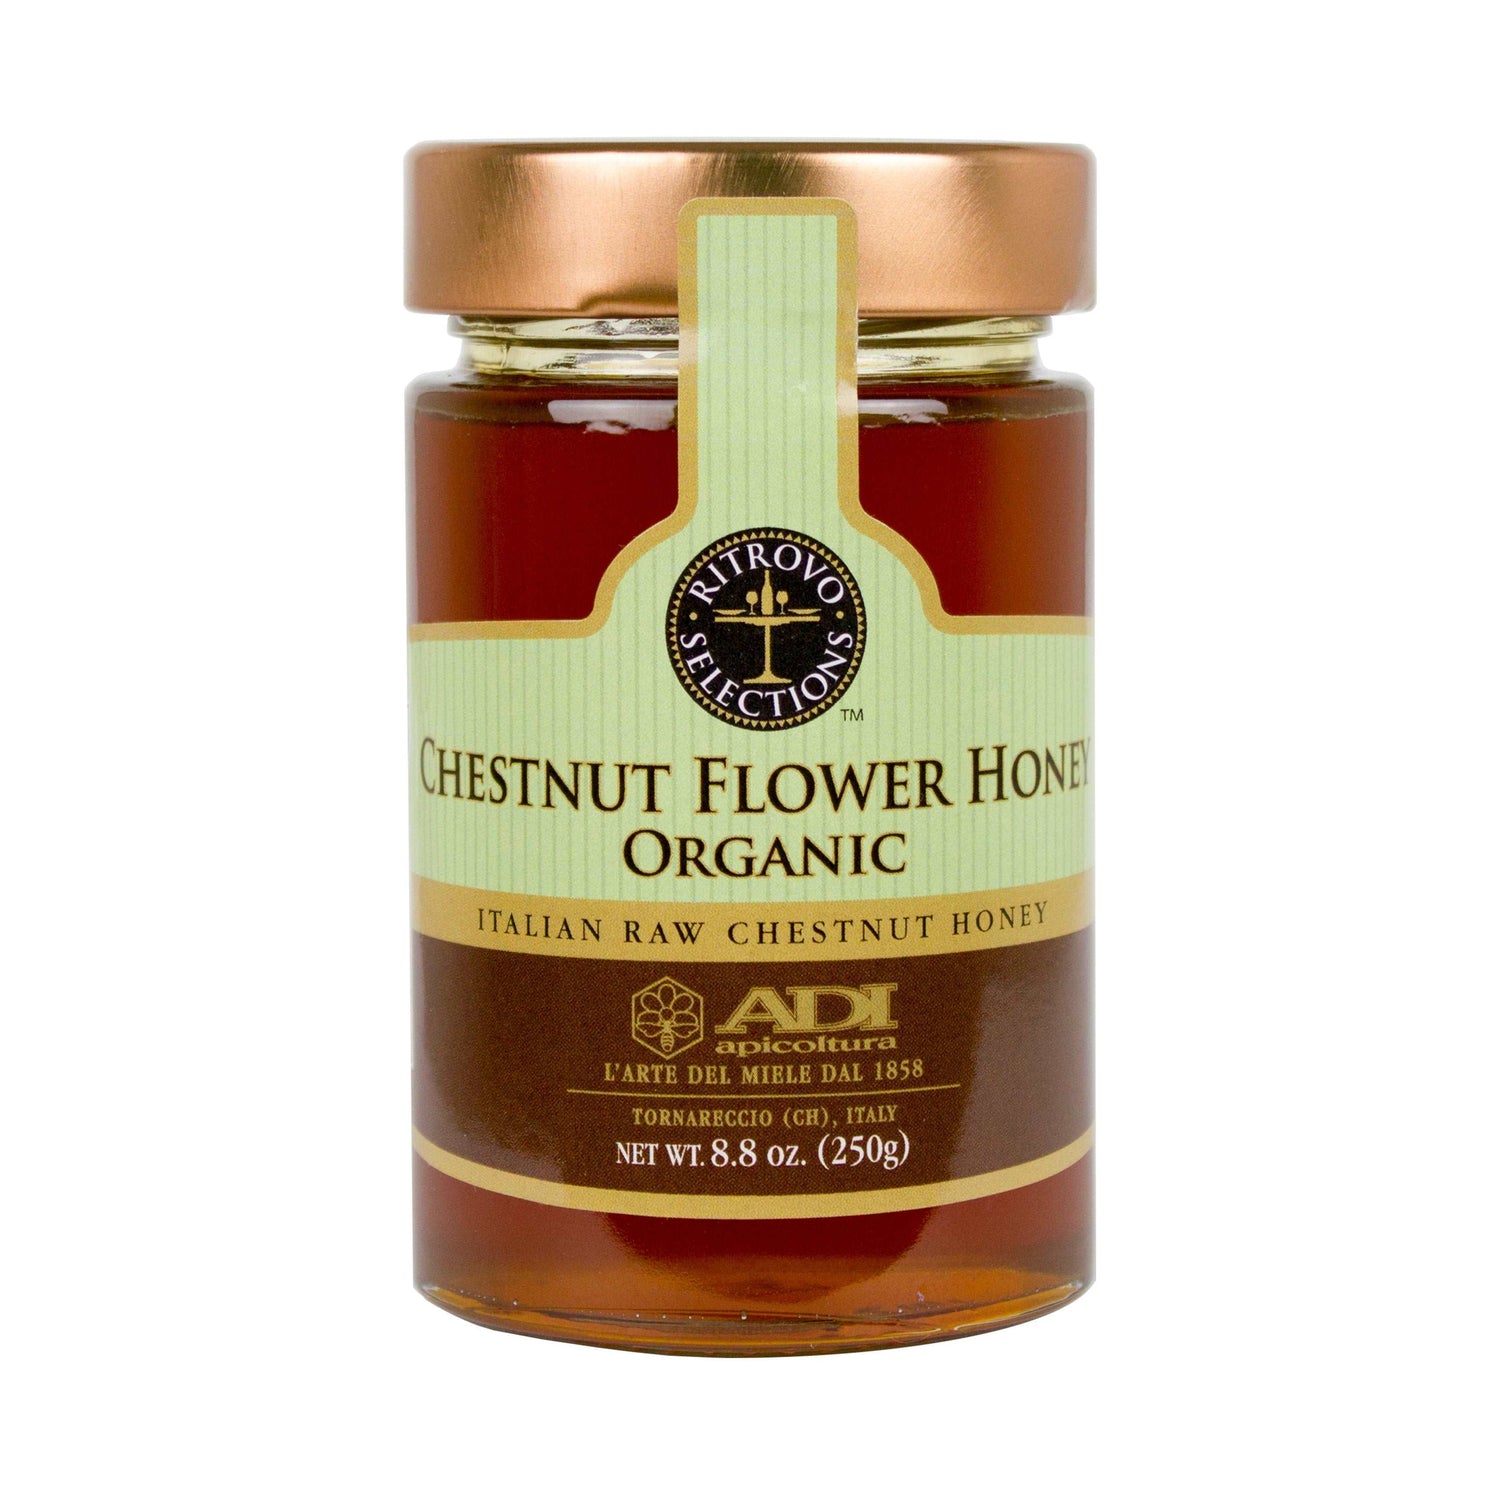 ADI Apicoltura Organic Chestnut Flower Honey